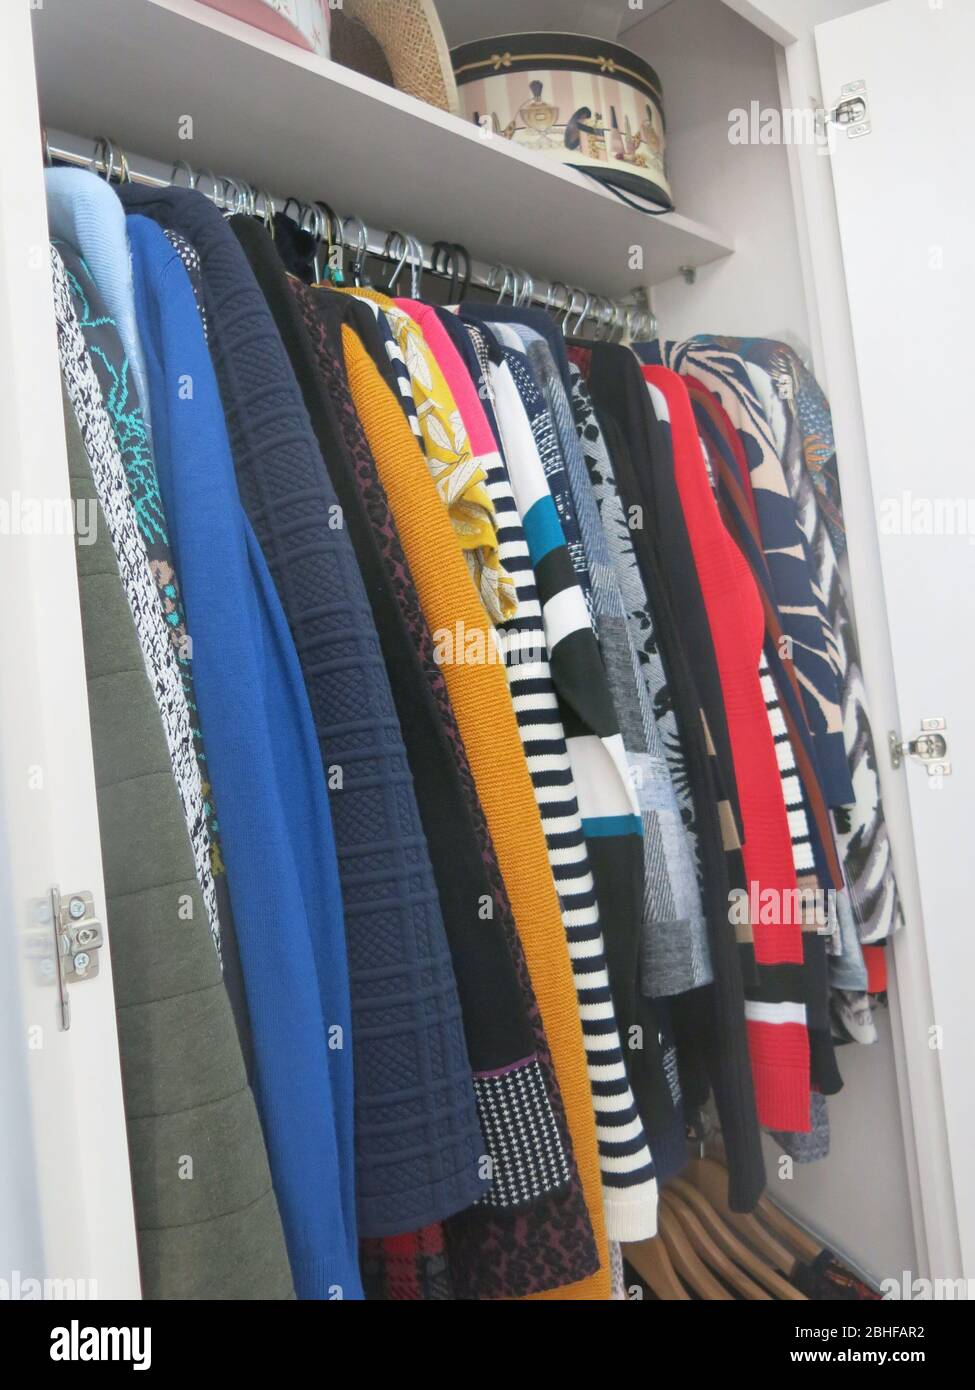 Die Garderobe aufzuräumen ist eine gute Aufgabe, um sich zu verstauen und ordentlich aufgehängte Kleidung zu hinterlassen, die frisch gewaschen wurde. Stockfoto